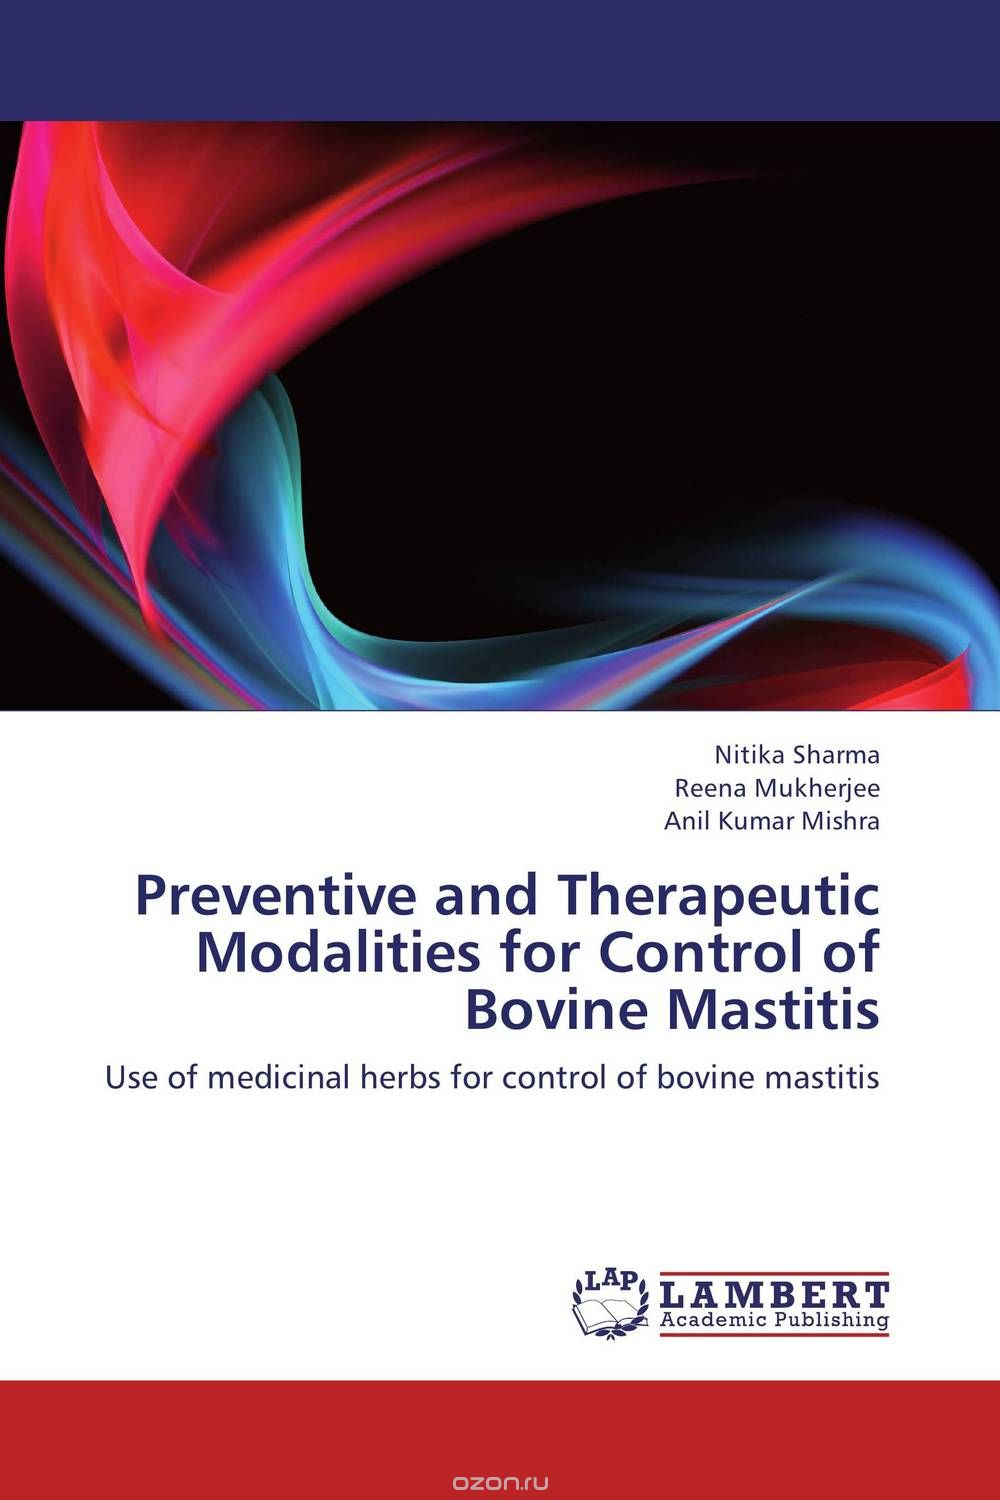 Скачать книгу "Preventive and Therapeutic Modalities for Control of Bovine Mastitis"